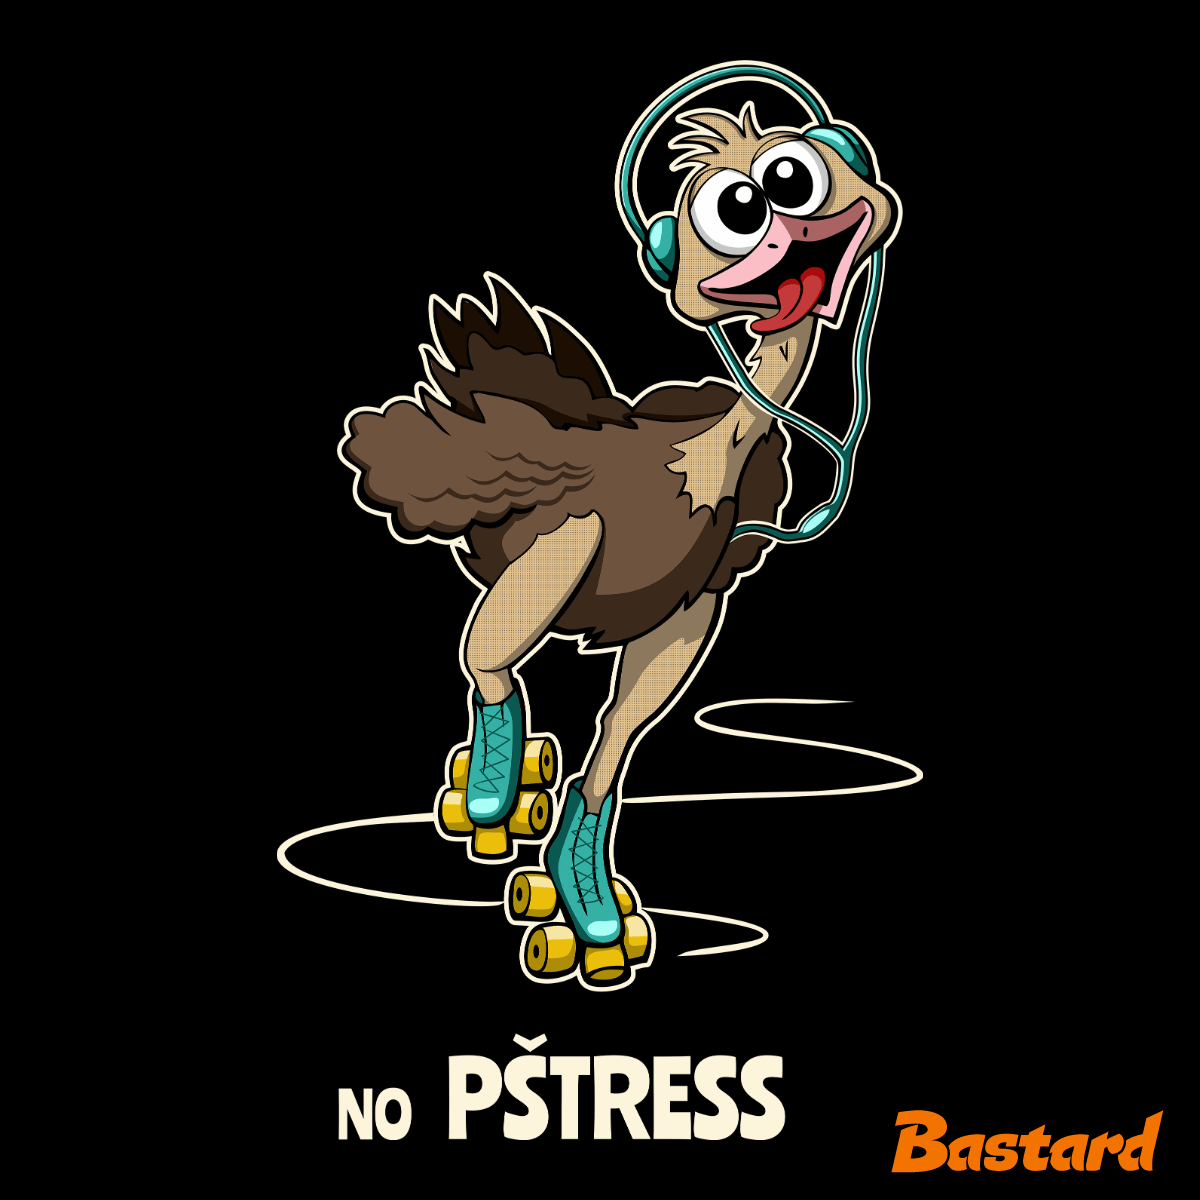 No pštress